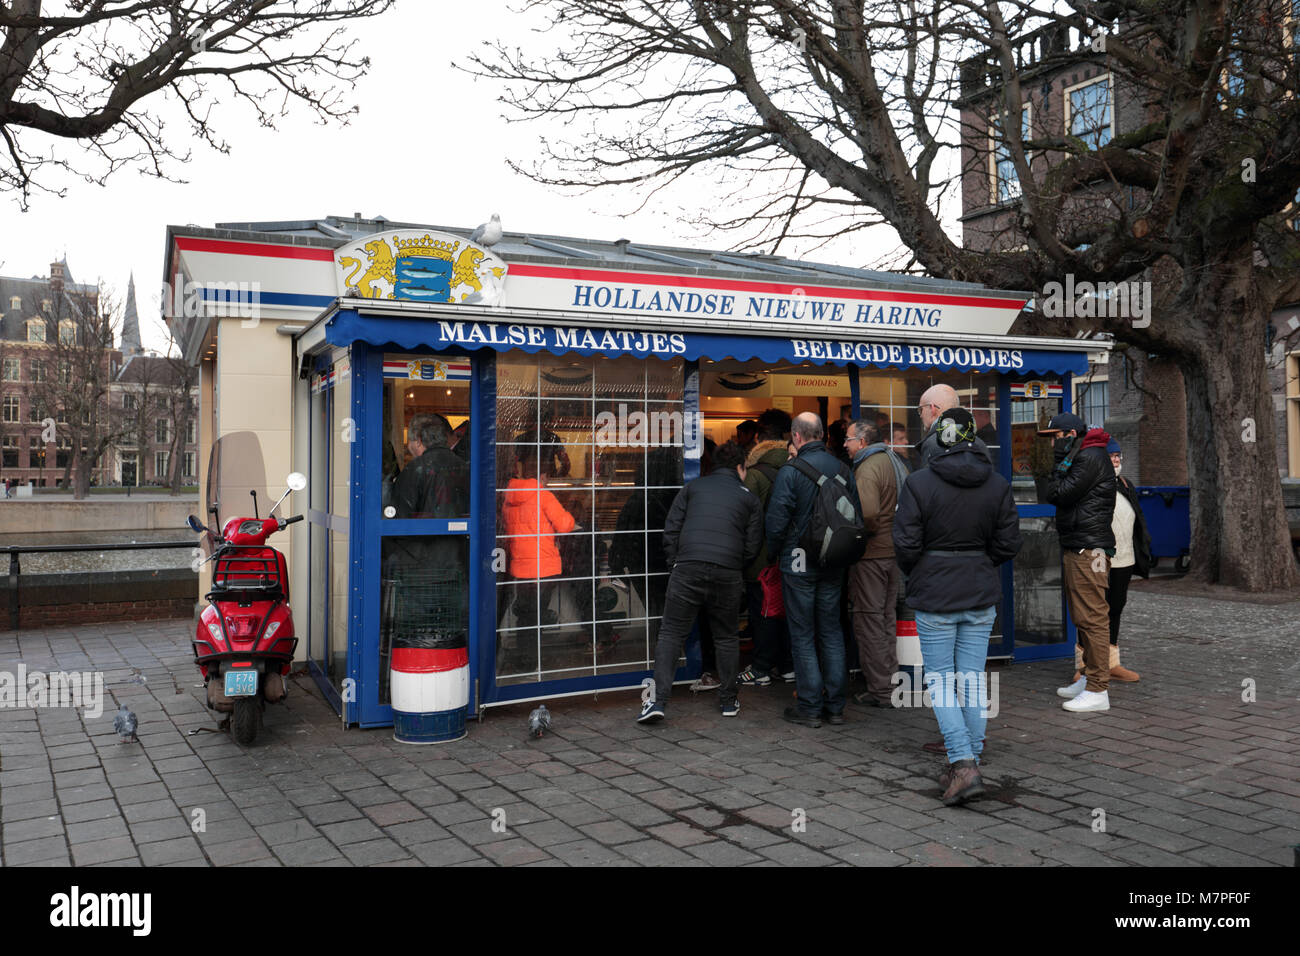 L'Aia, Paesi Bassi - 4 Gennaio 2017: persone che acquistano alimenti nella nuova aringa olandese kiosk presso Binnenhof. Dutchs mangiare il loro pesce crudo su un panino o come snac Foto Stock